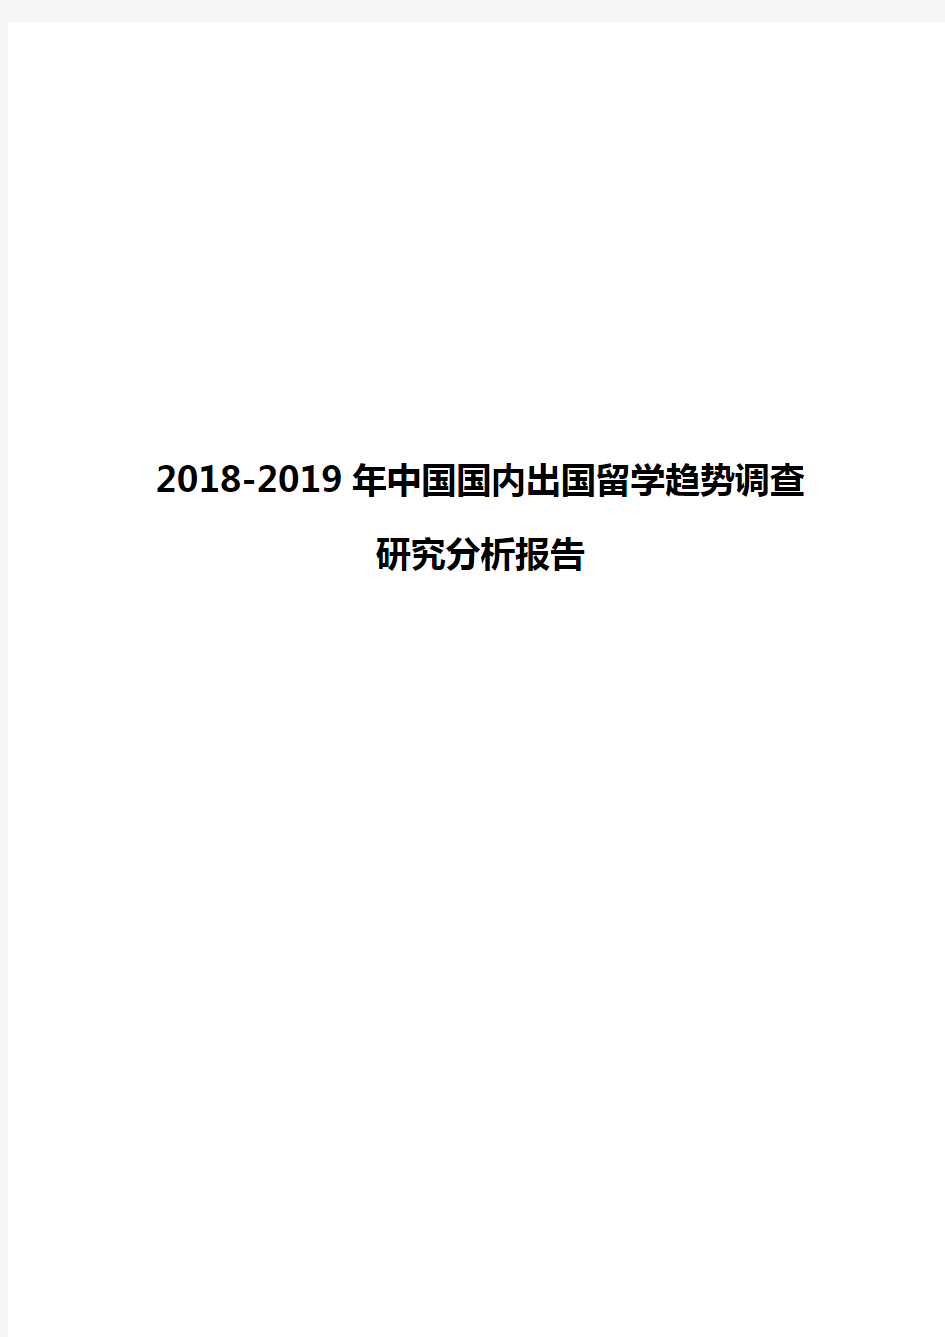 2018-2019年中国国内出国留学趋势调查研究分析报告